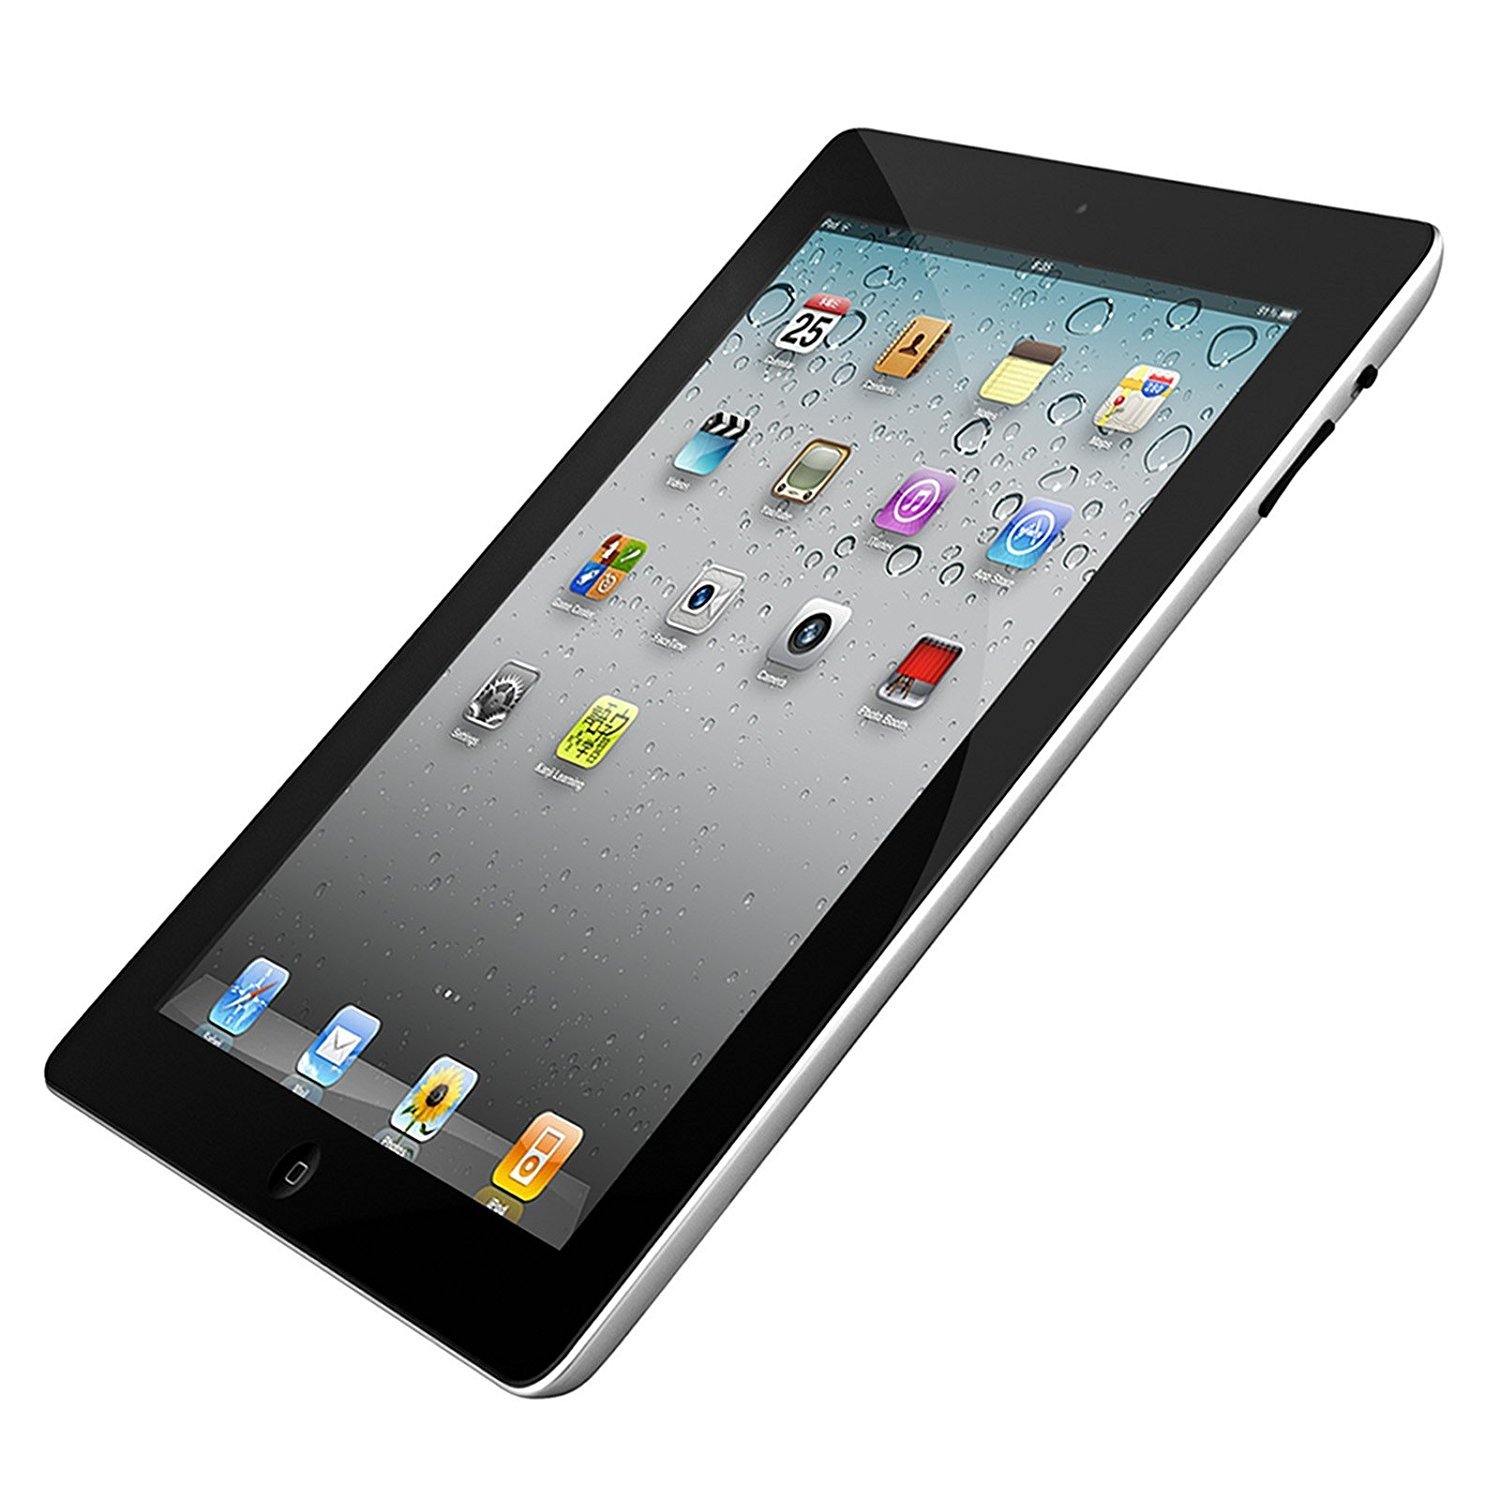 Restored Apple iPad 2 16GB, Wi-Fi, 9.7in - Black - (MC769LL/A) (Refurbished) - image 5 of 8